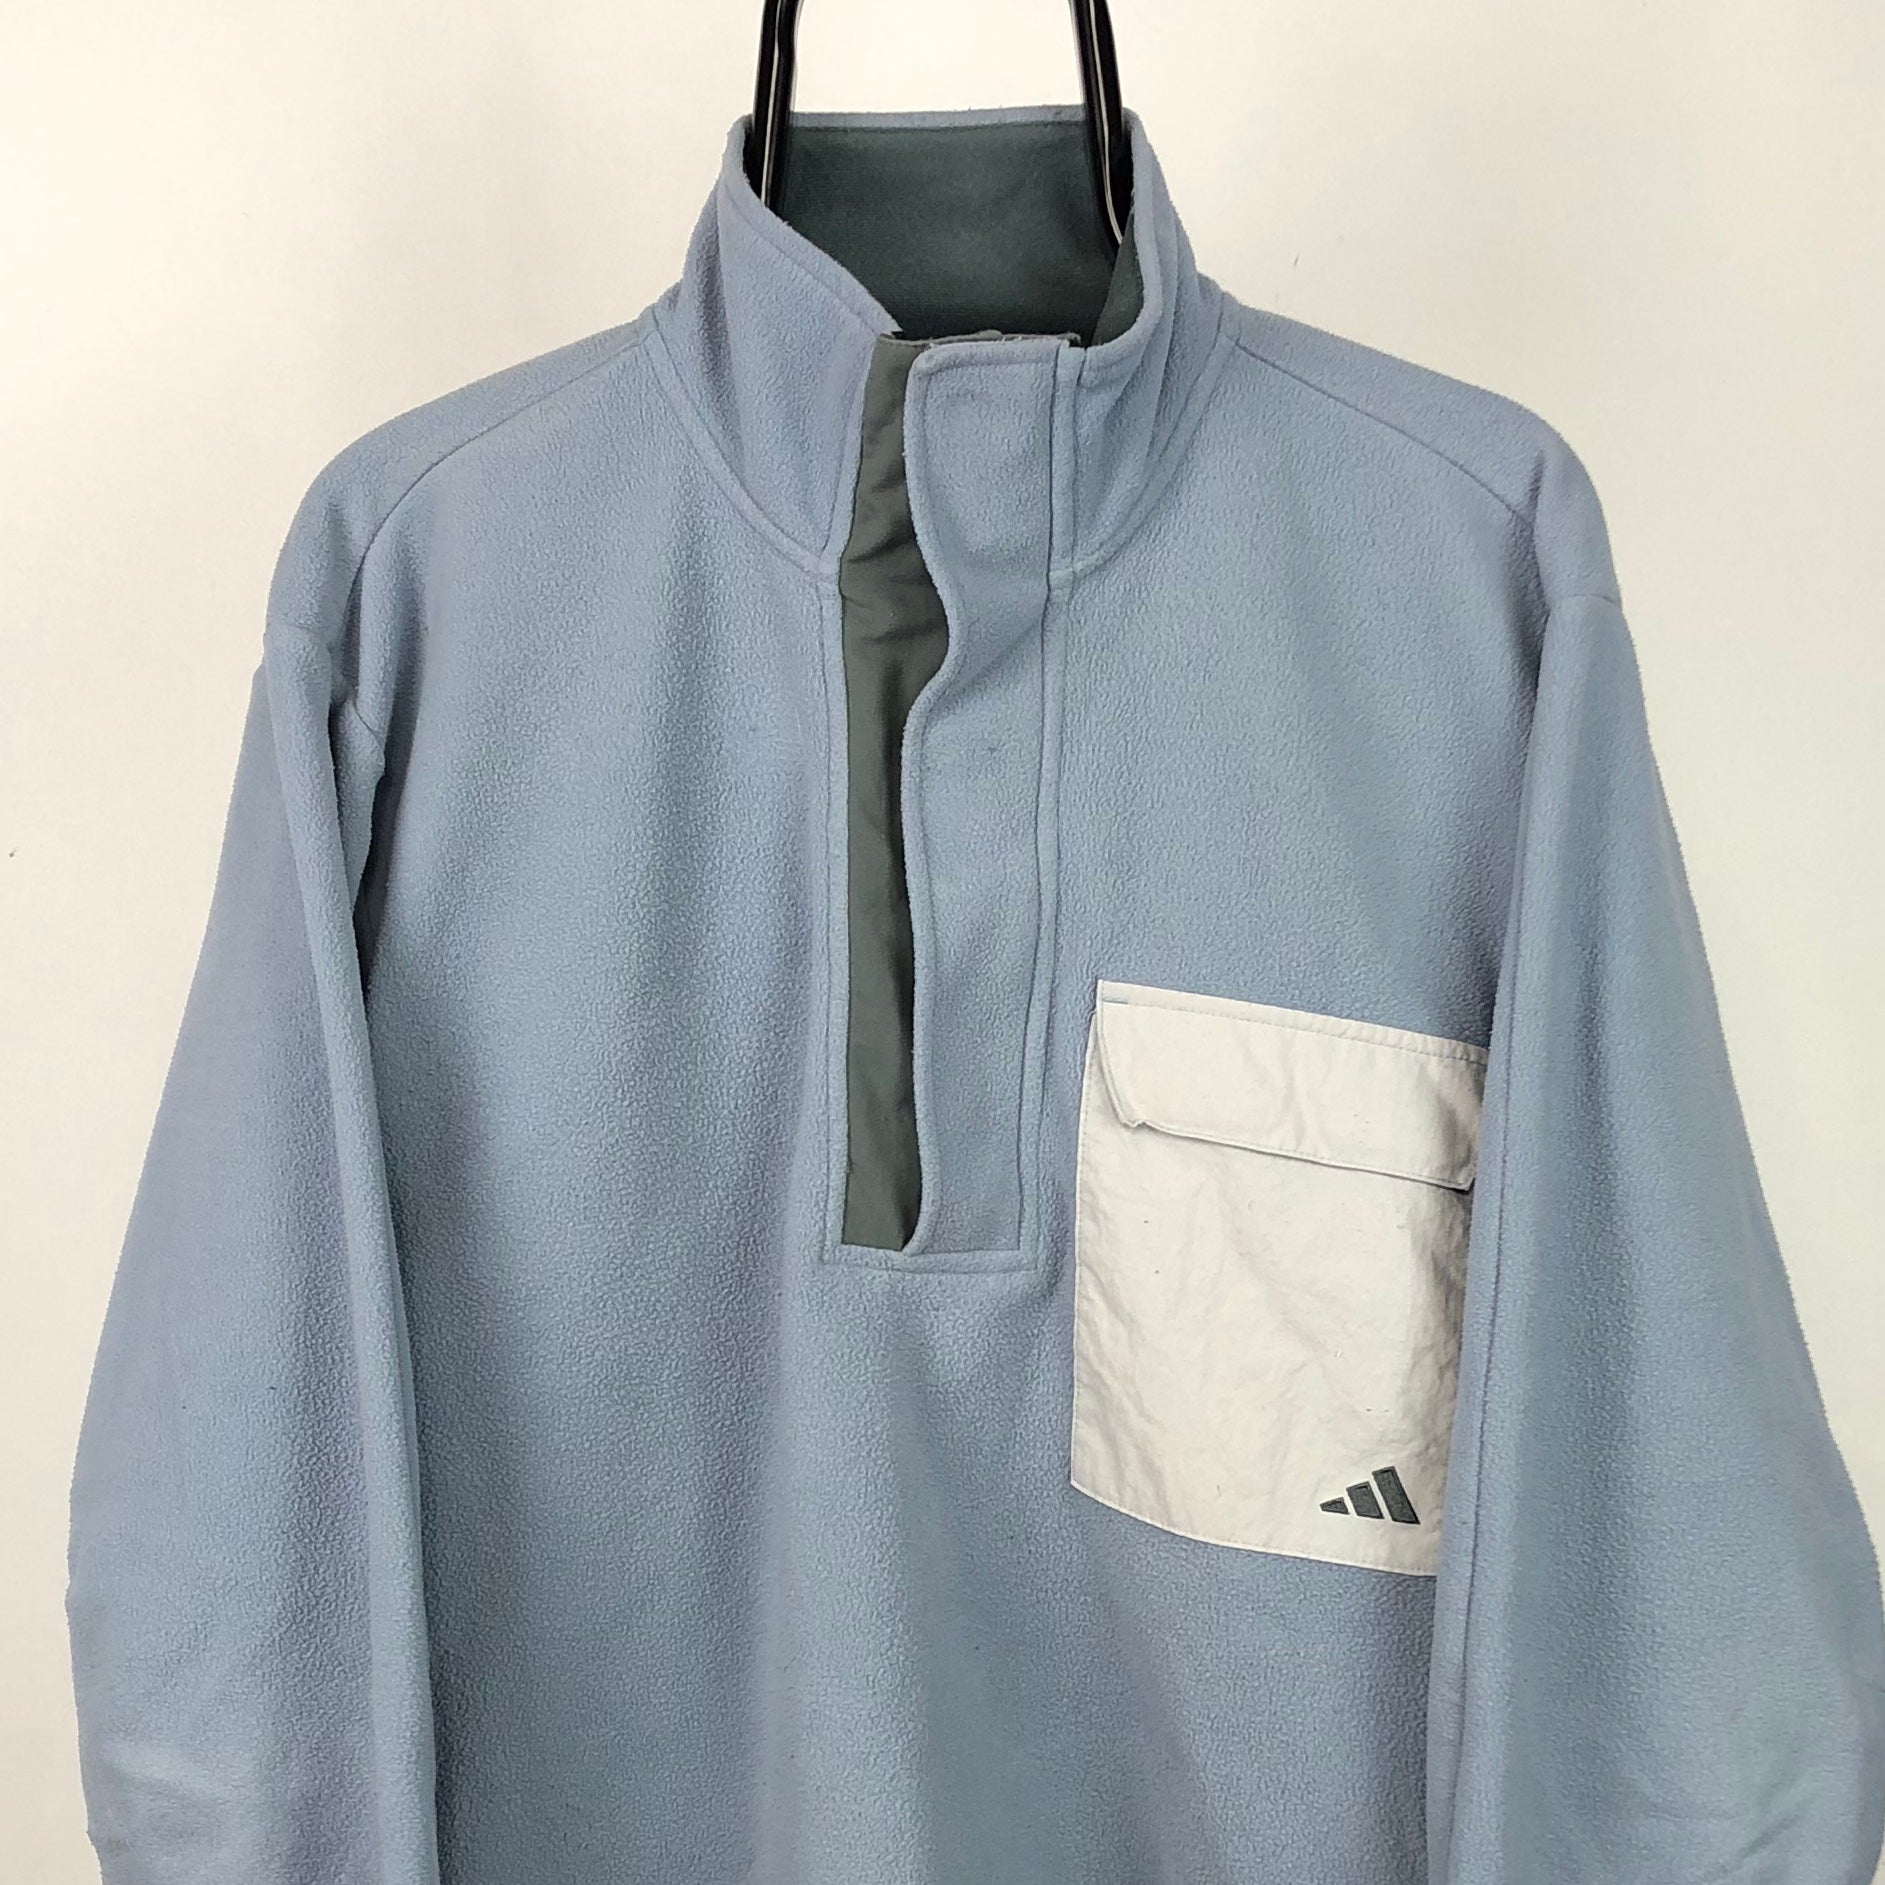 Vintage 90s Adidas Equipment Fleece in Baby Blue - Men's Medium/Women's Large